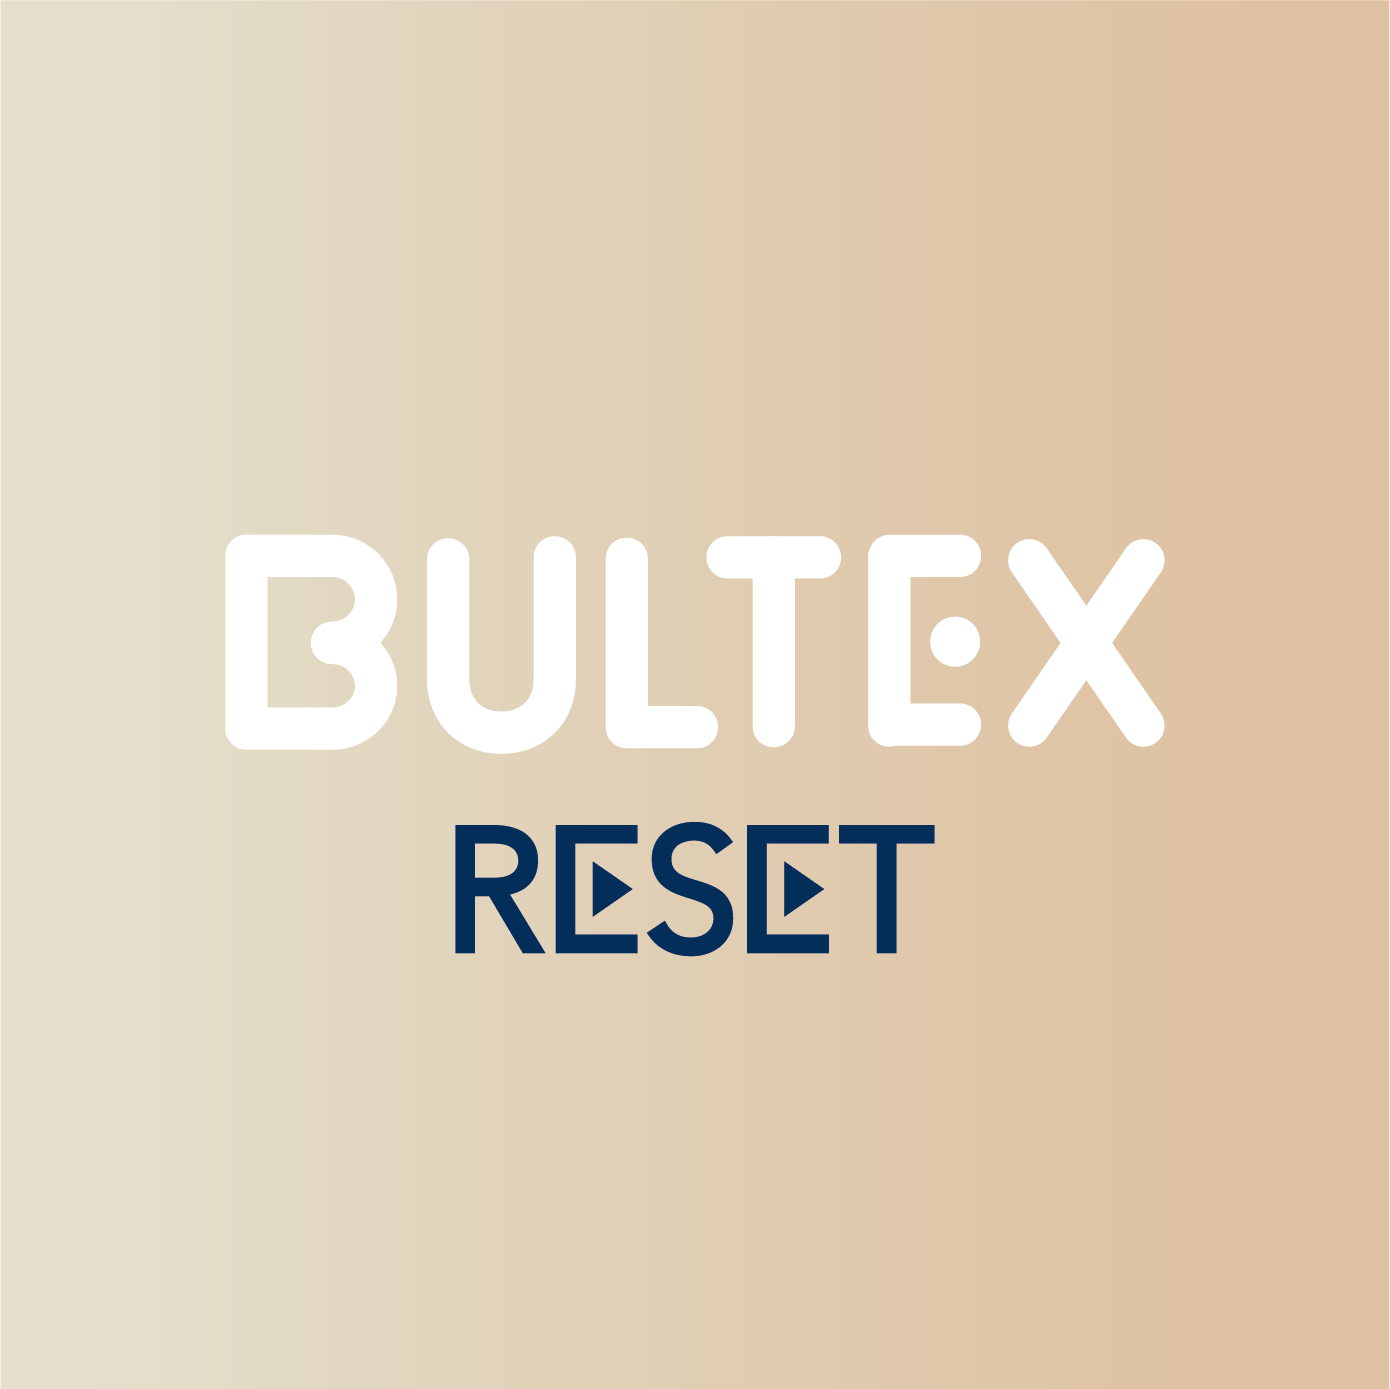 Sommier Bultex Reset